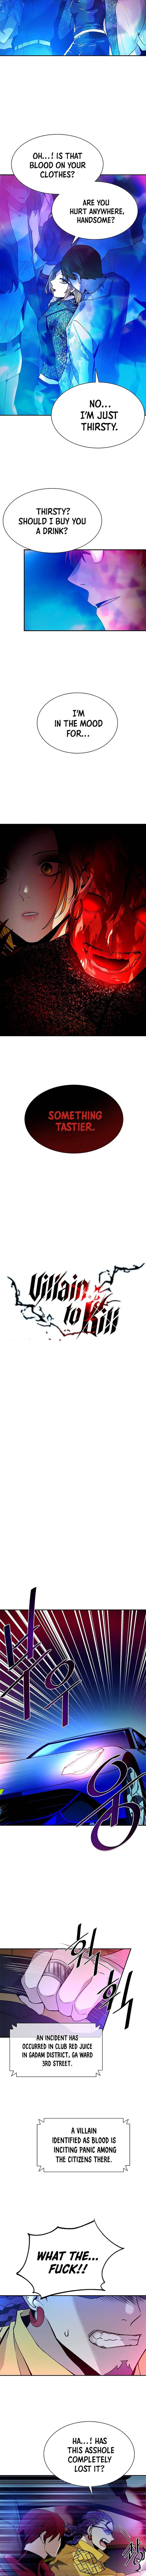 Villain to Kill, Chapter 22